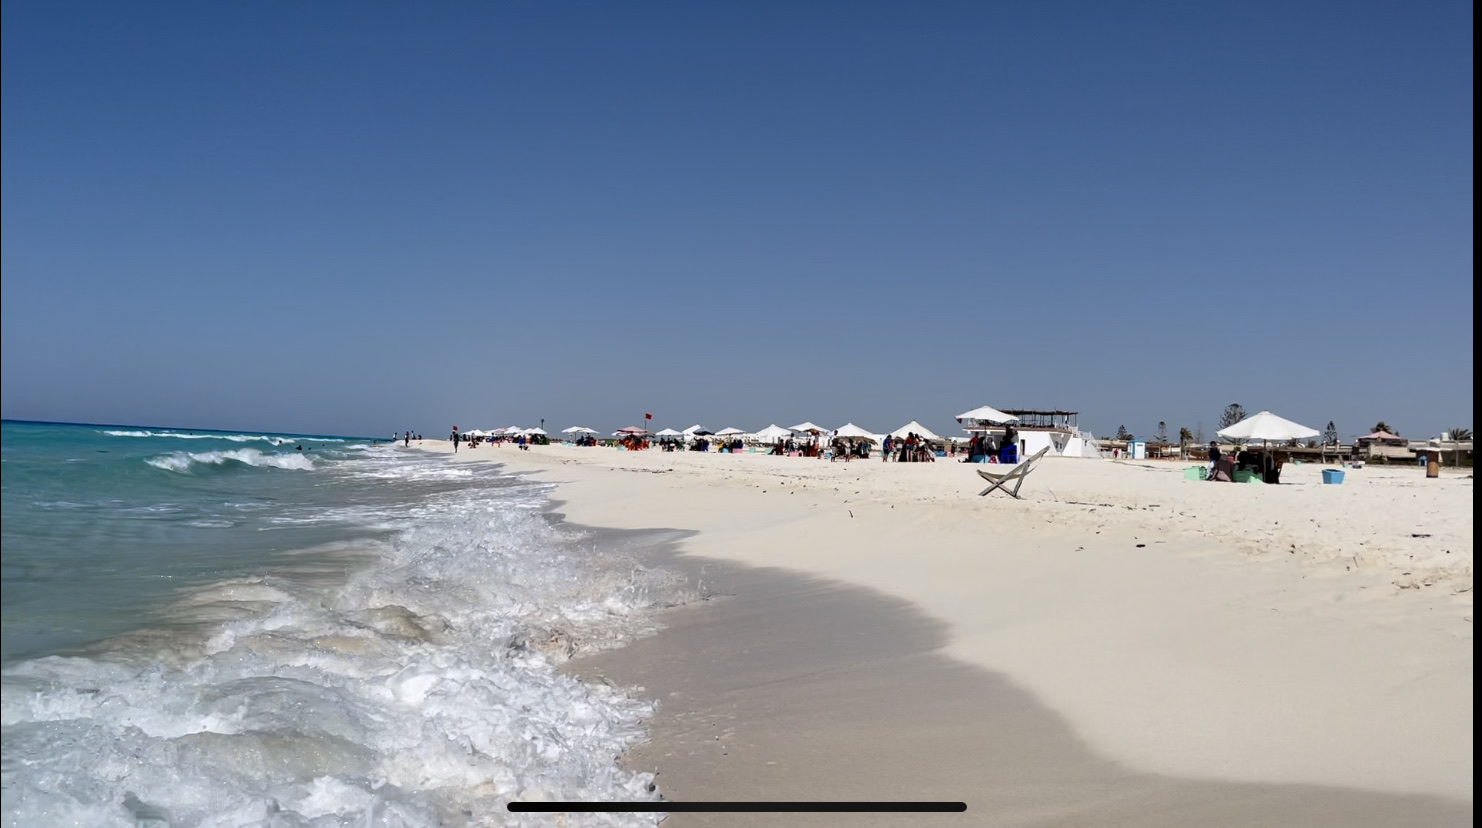 Aida Beach'in fotoğrafı beyaz ince kum yüzey ile